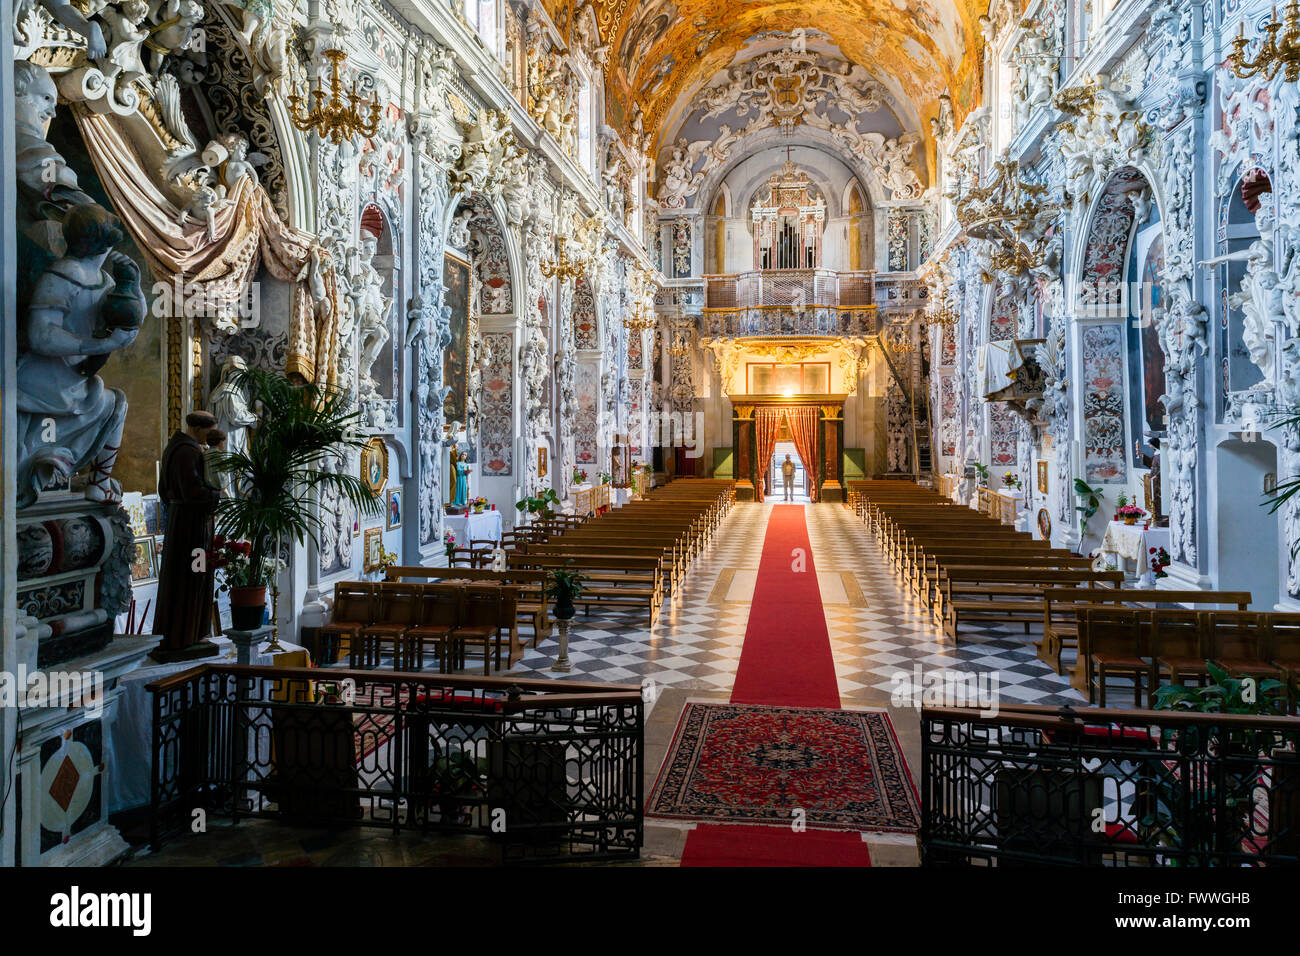 Baroque interior, Chiesa di San Francesco, St. Francis Church, Mazara del Vallo, Province of Trapani, Sicily, Italy Stock Photo